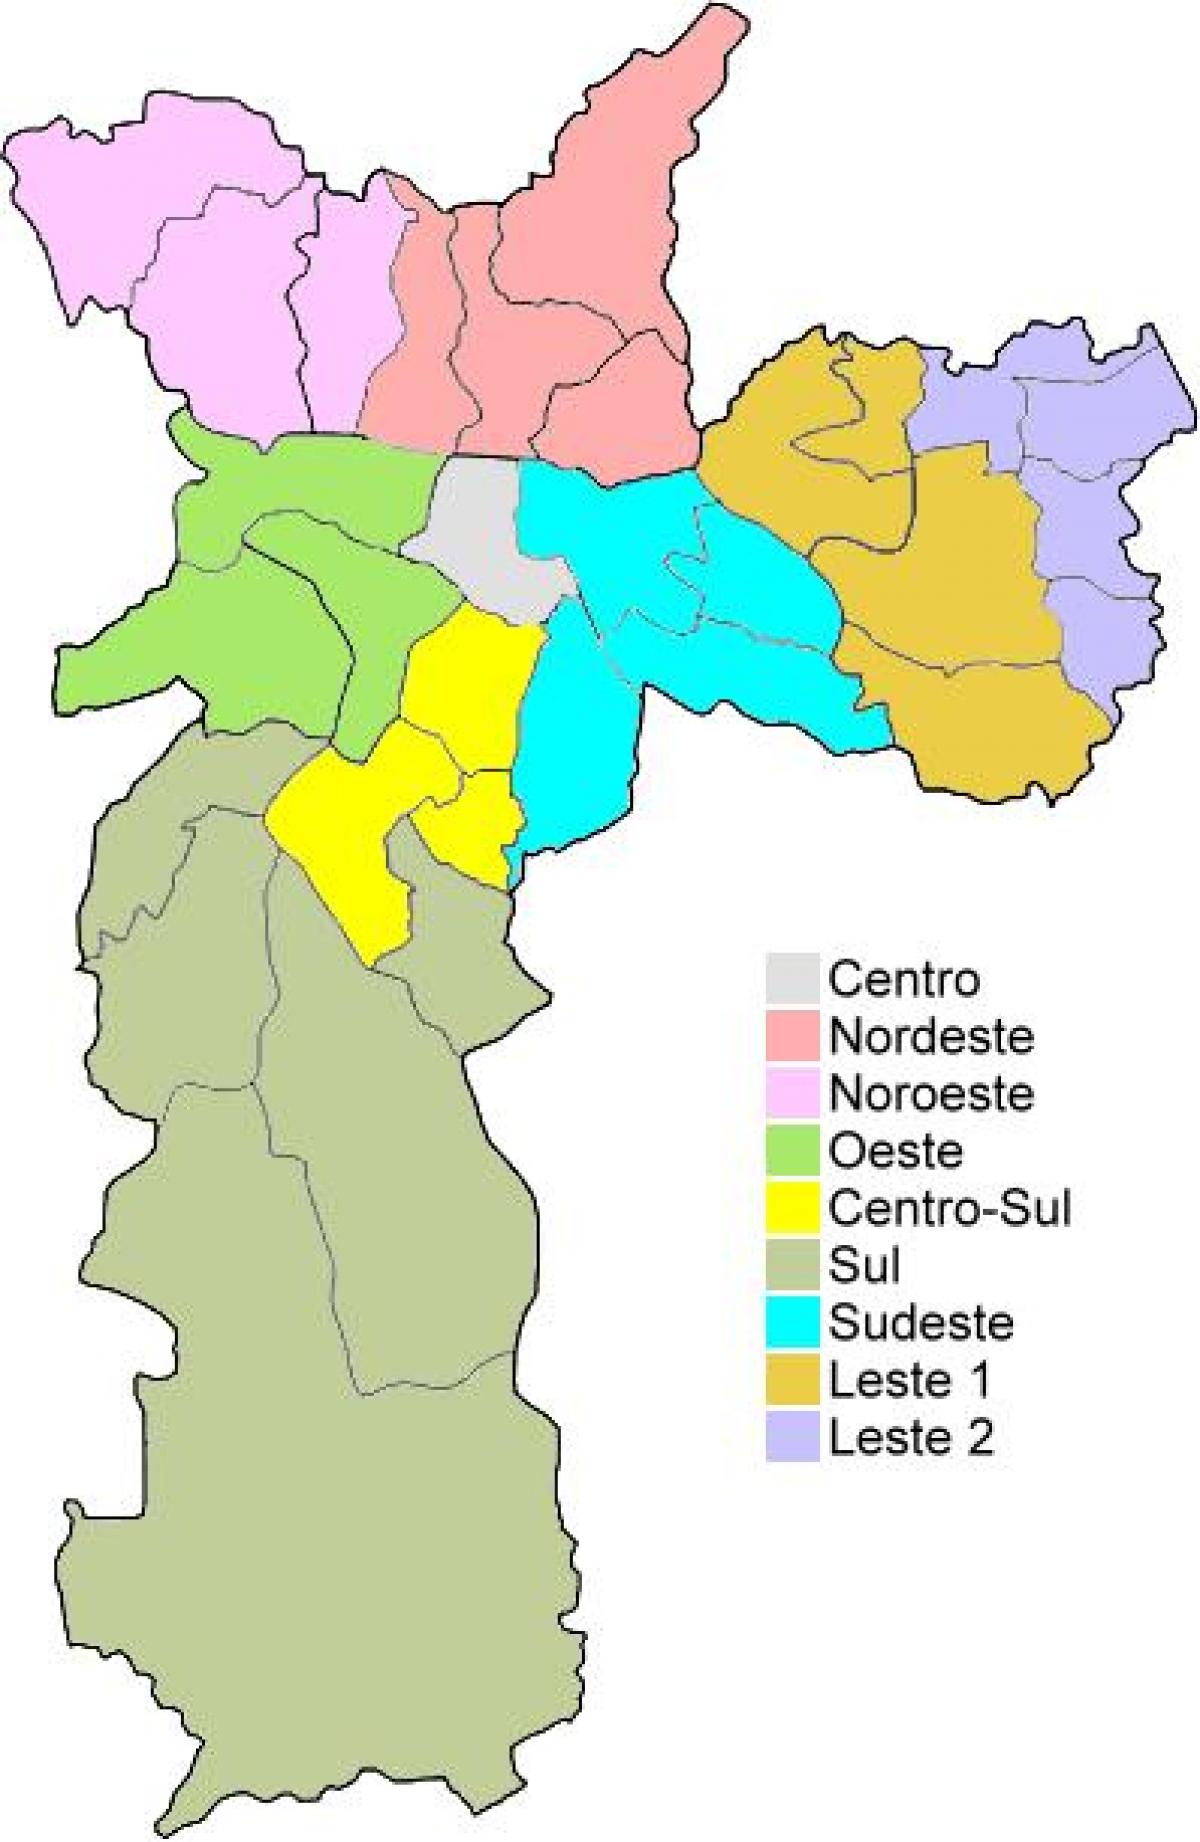 નકશો વહીવટી વિસ્તારો માં સાઓ પાઉલો